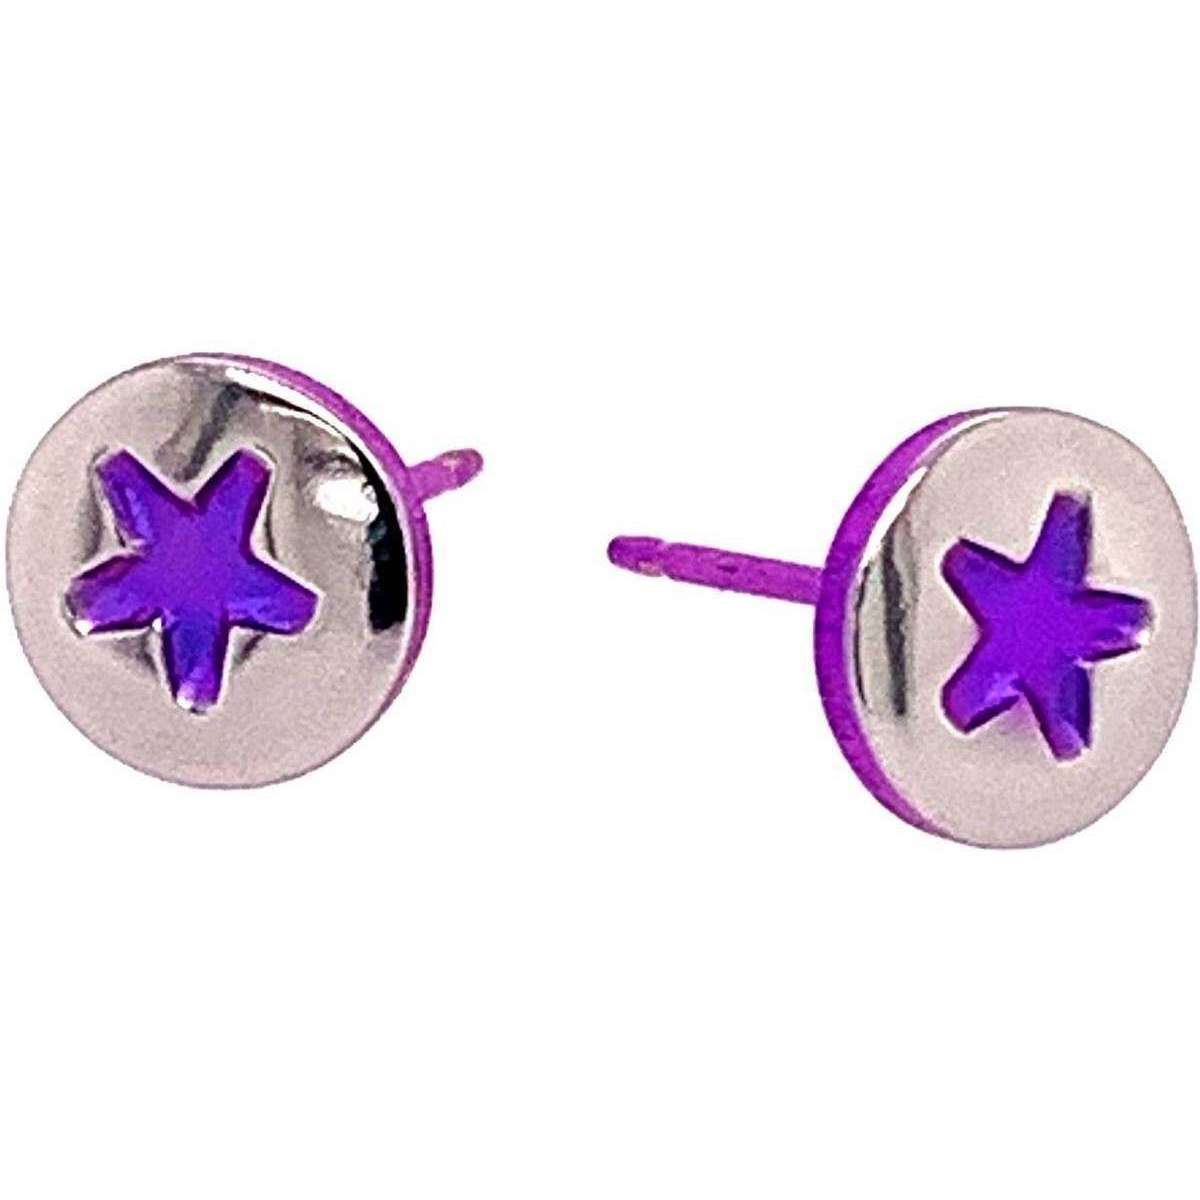 Ti2 Titanium Star Stud Earrings - Purple